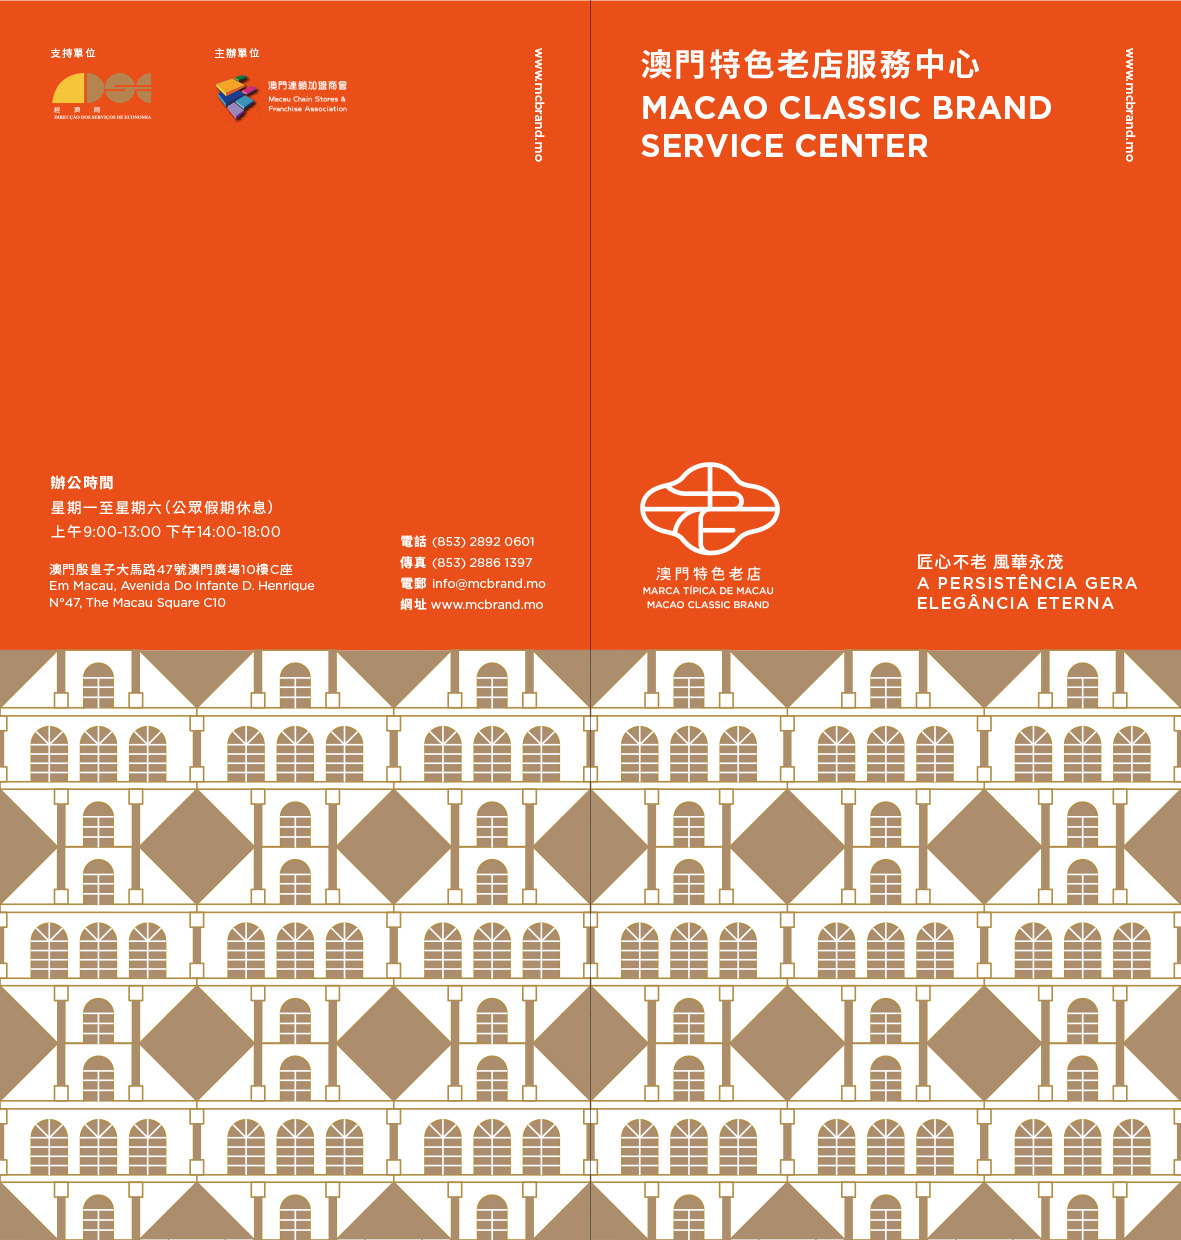 200309-Macao Classic Brand-branding-leaflet-cover-01-1.jpg